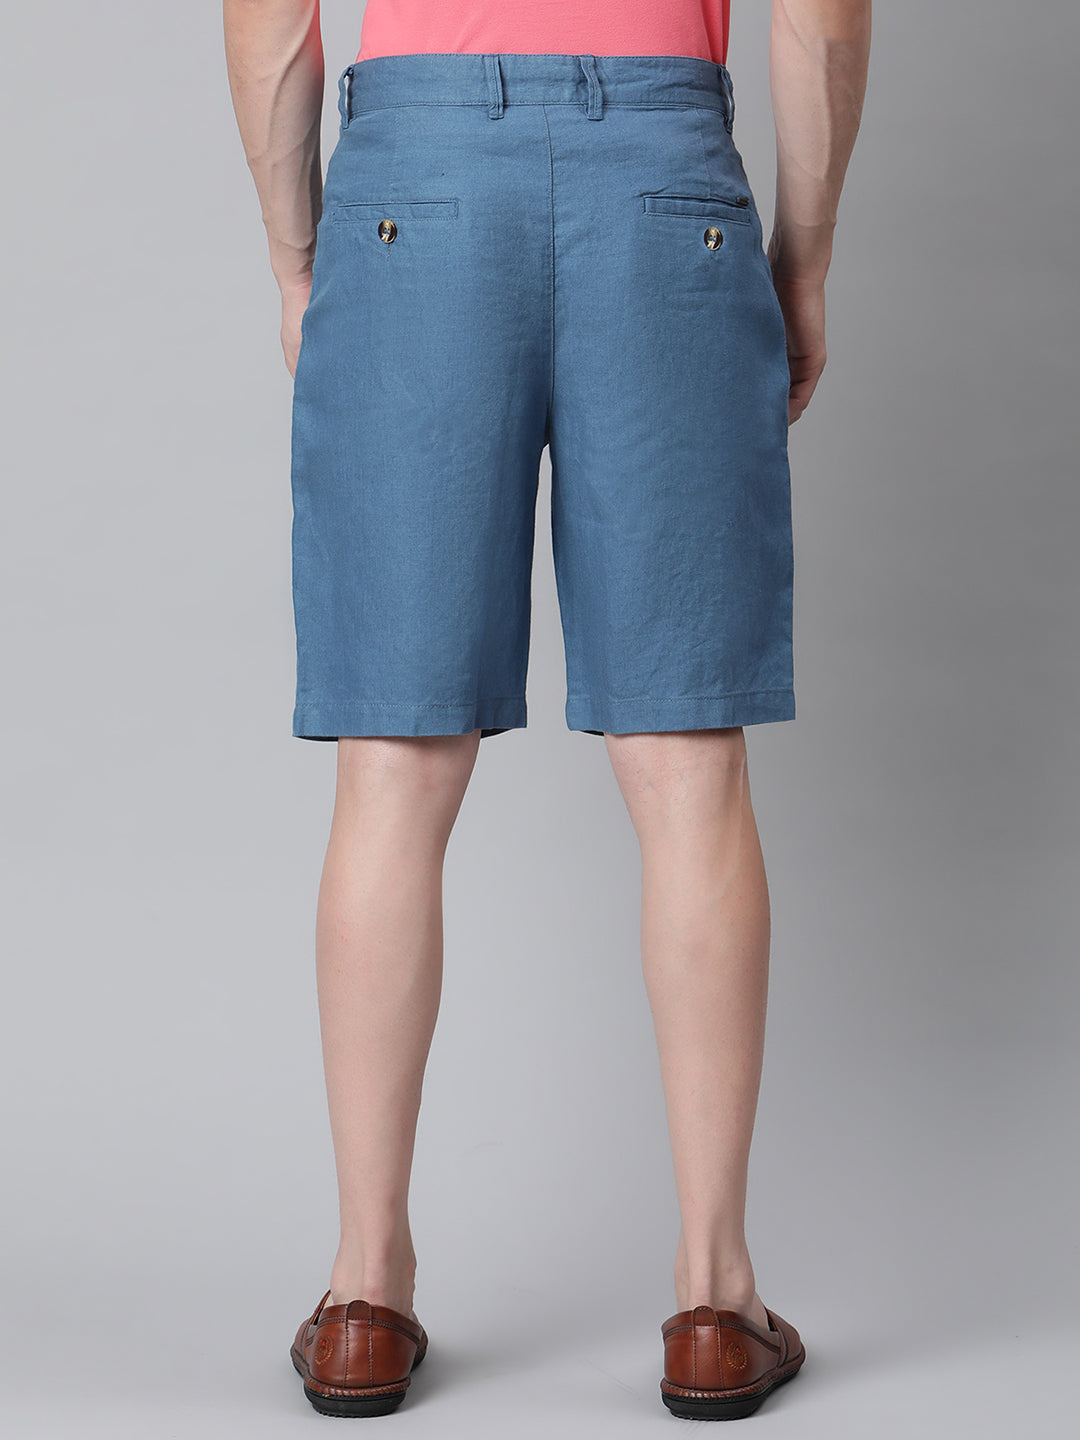 Harsam Men Teal Blue Solid Shorts